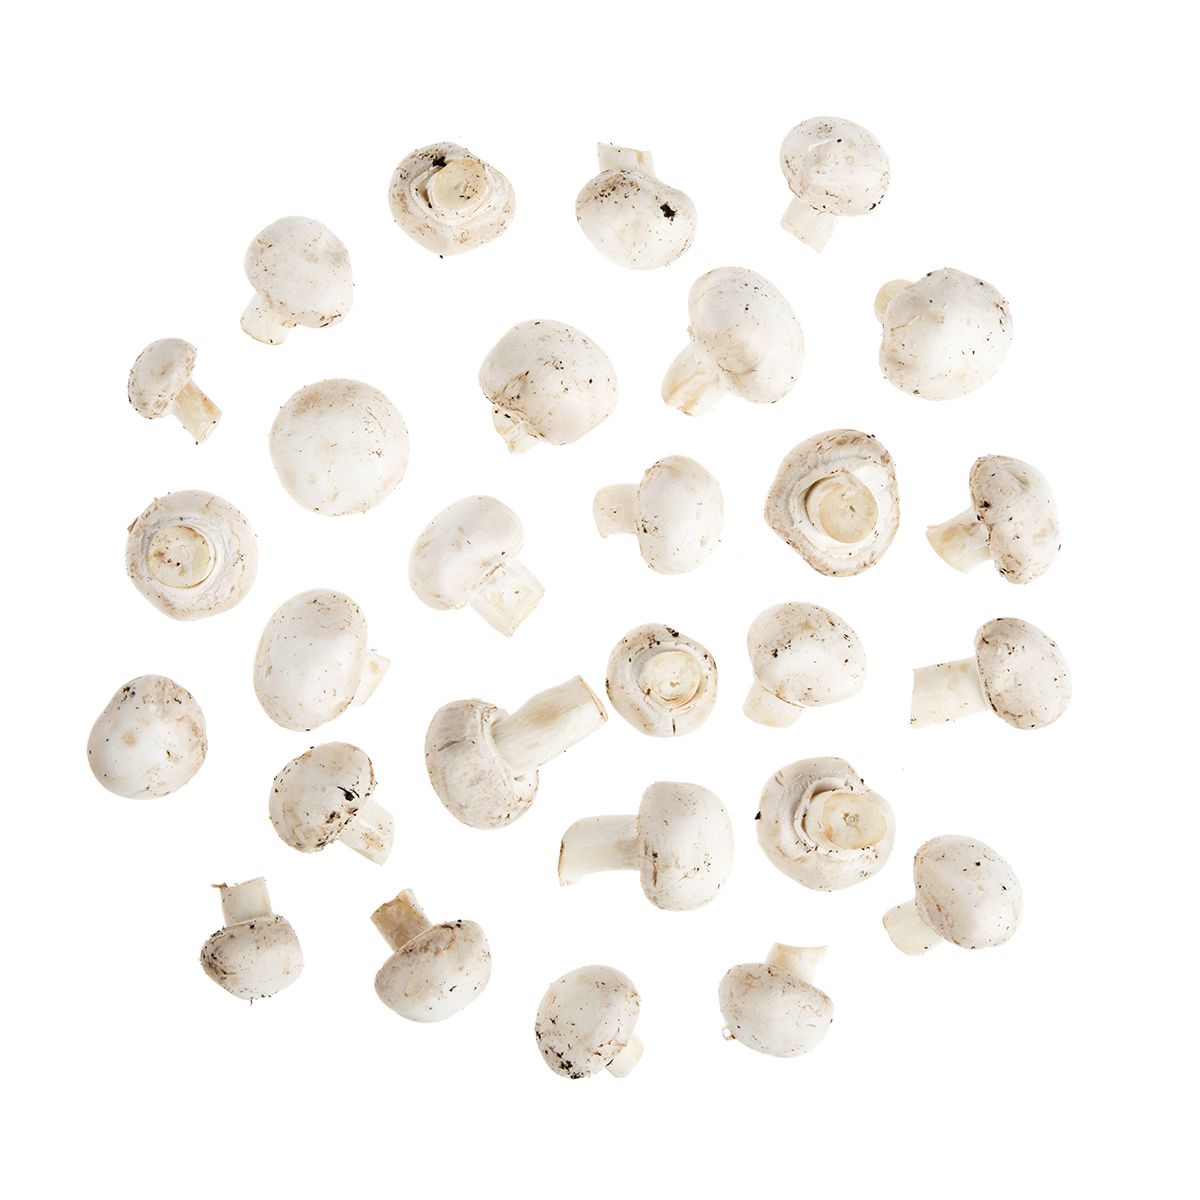 BoxNCase Organic Medium White Mushrooms